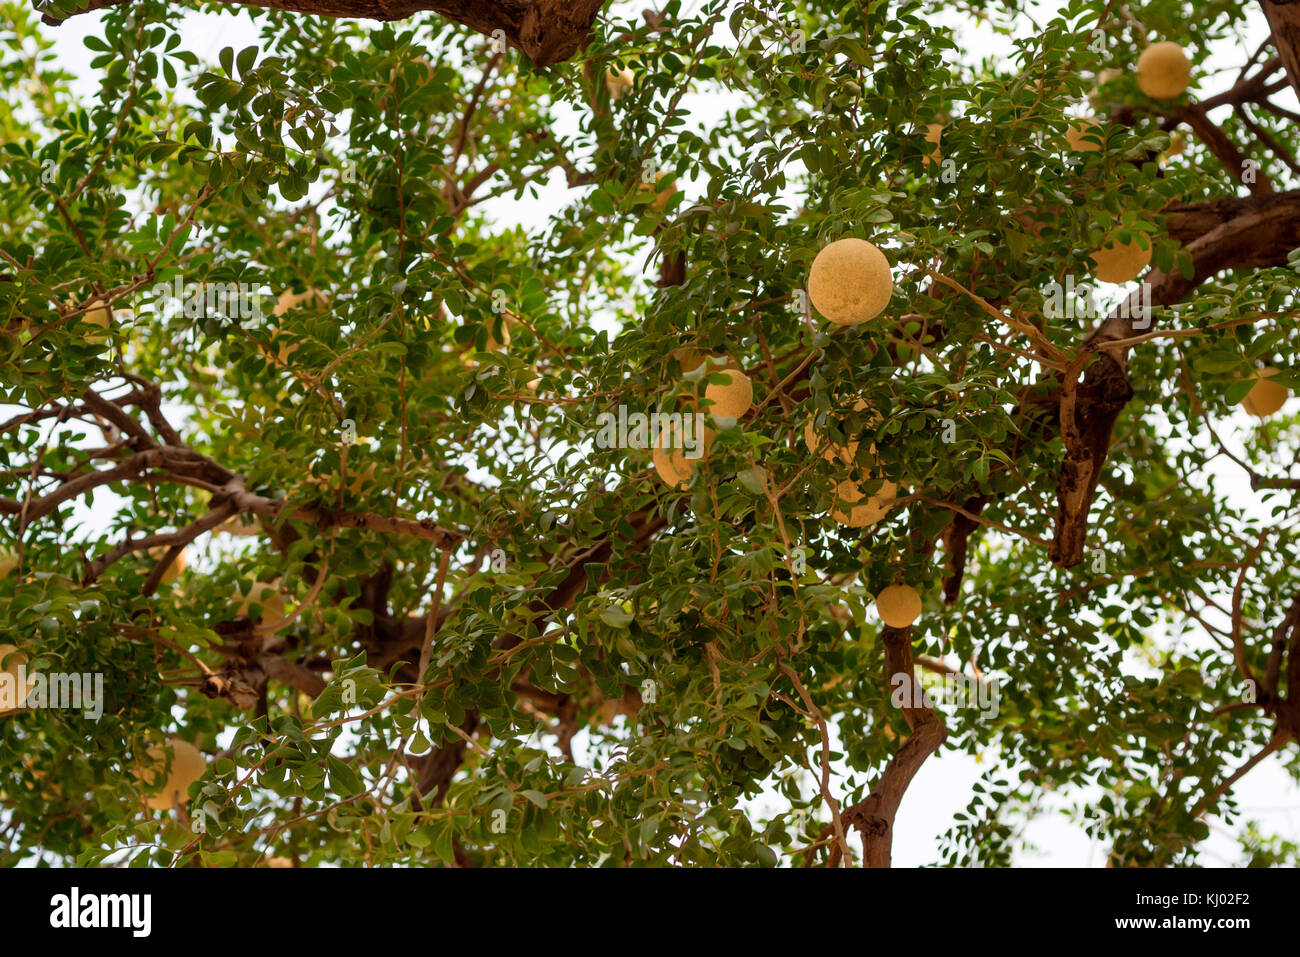 Limonia acidissima or wood-apple tree Stock Photo